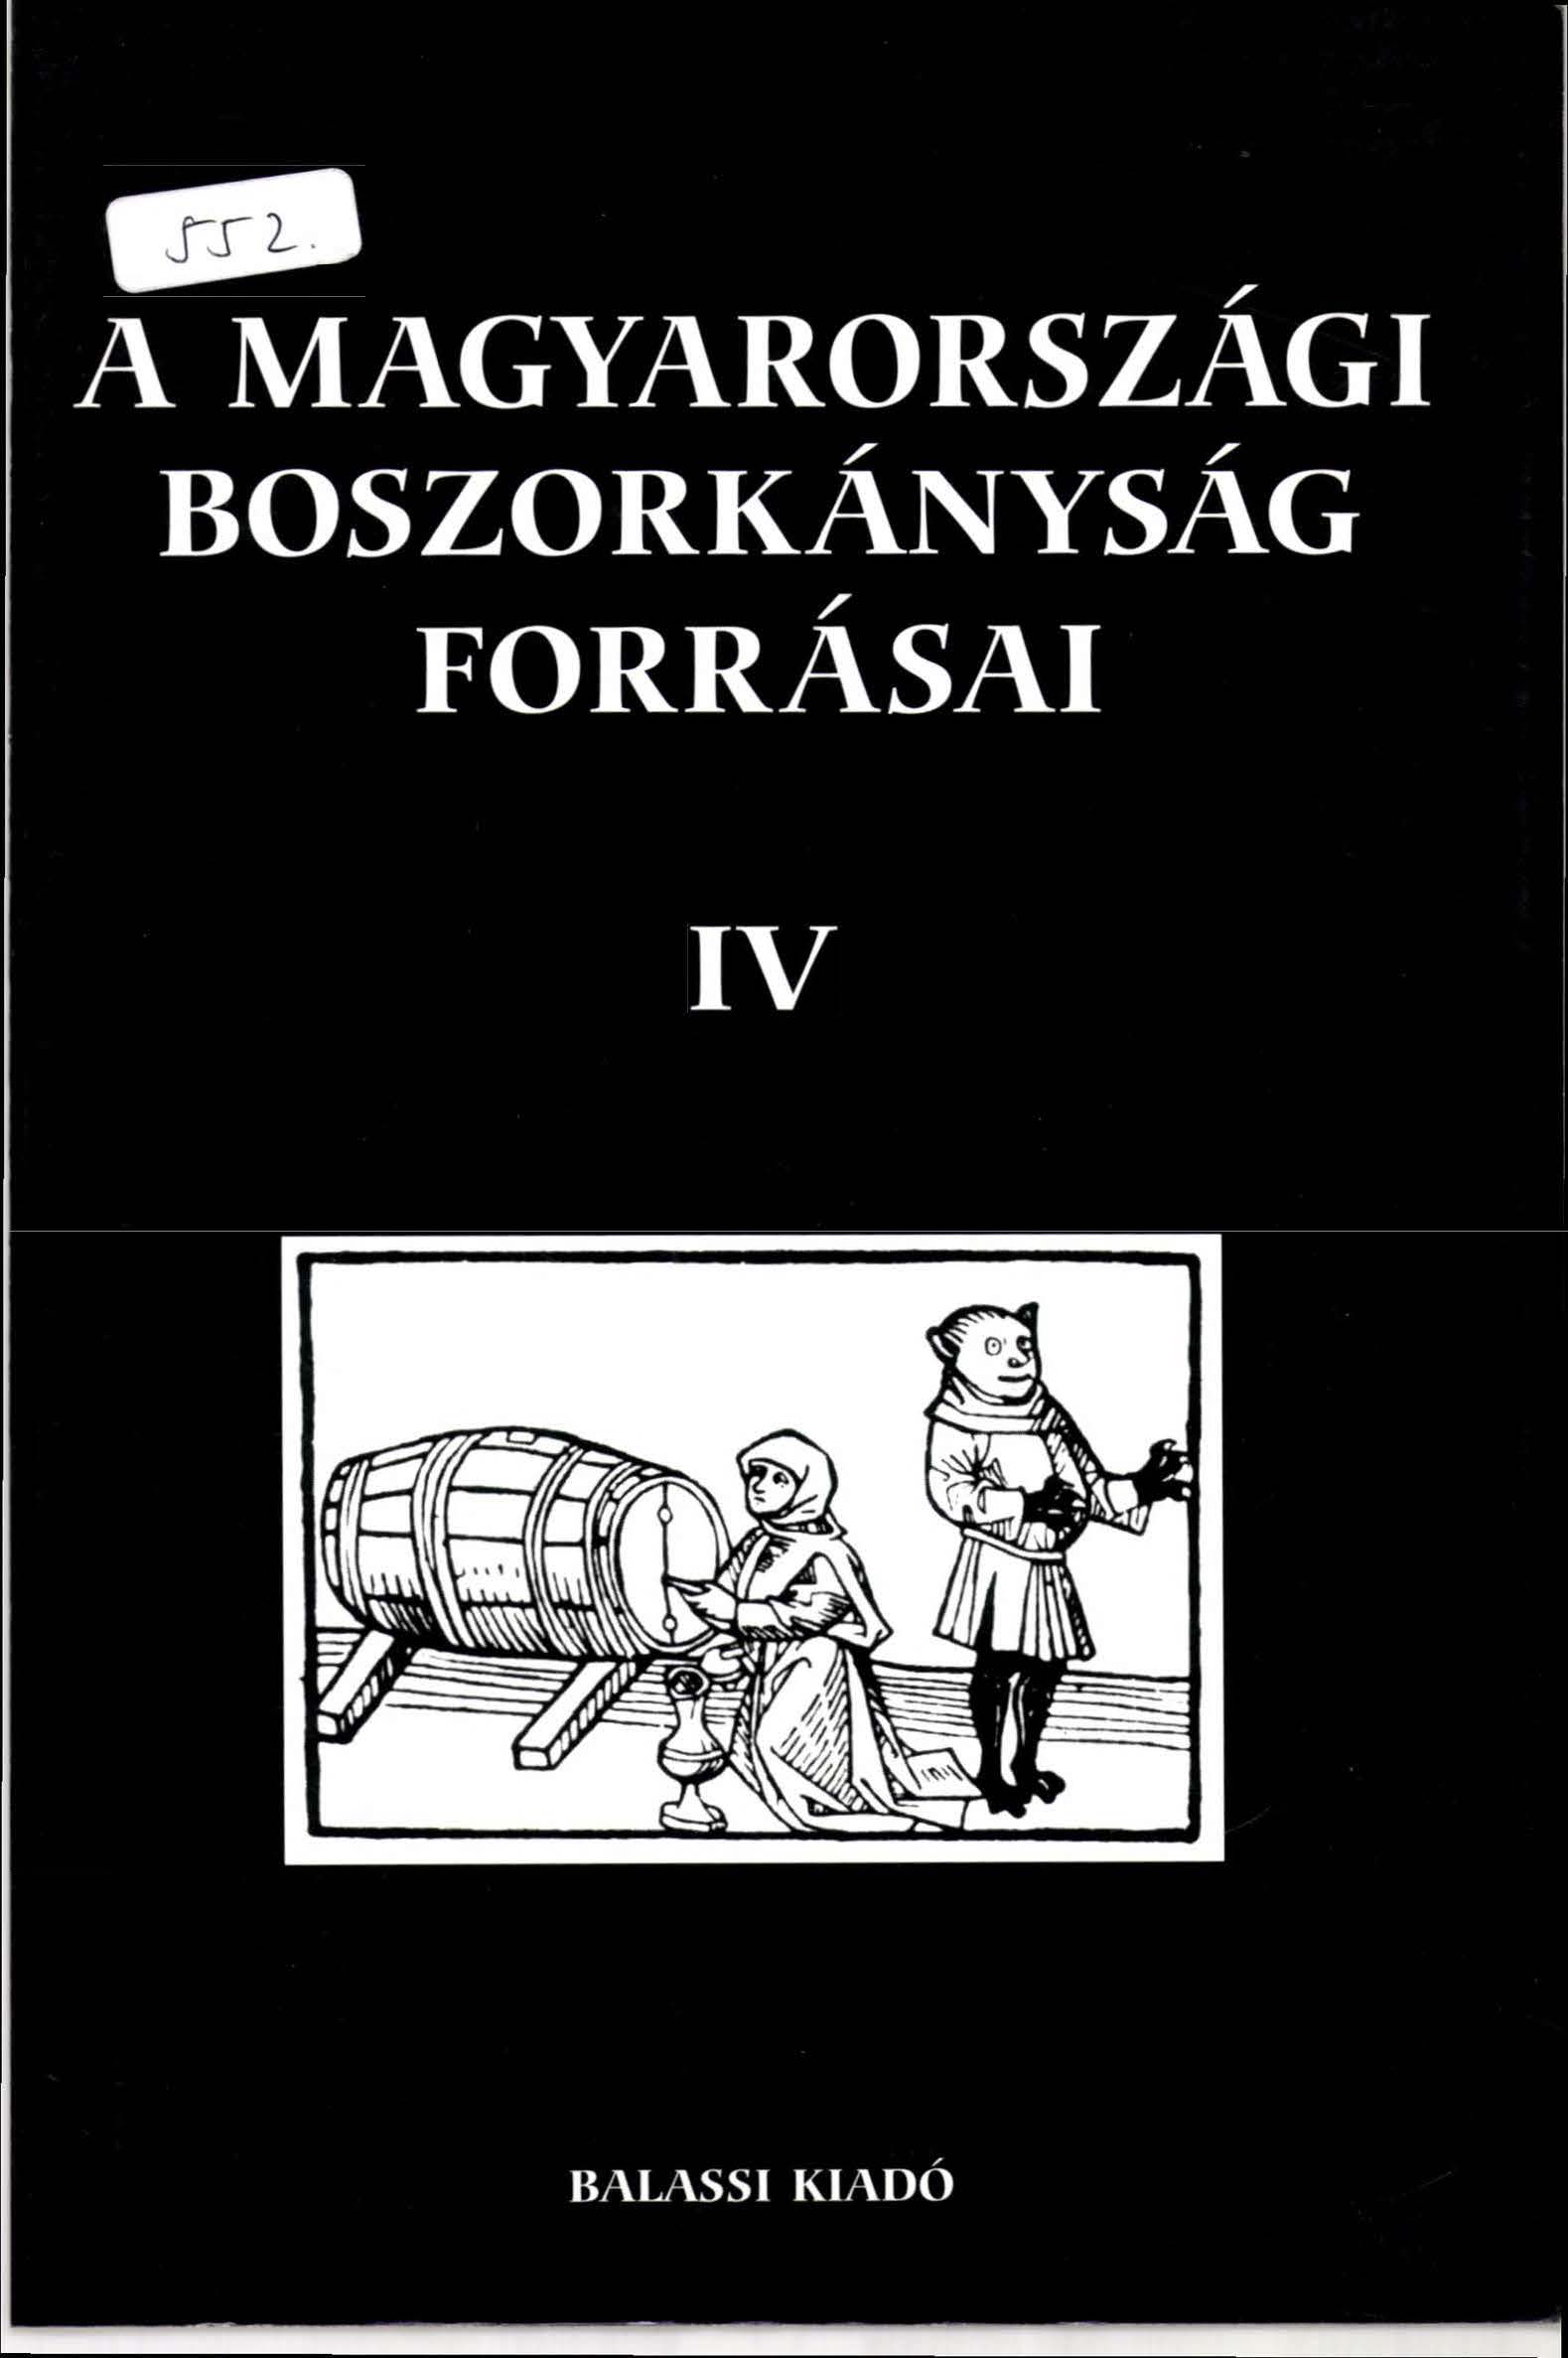 Oldalak kezdeteTÓTH G. P. 2005 Magyarországi boszorkányság forrásai IV